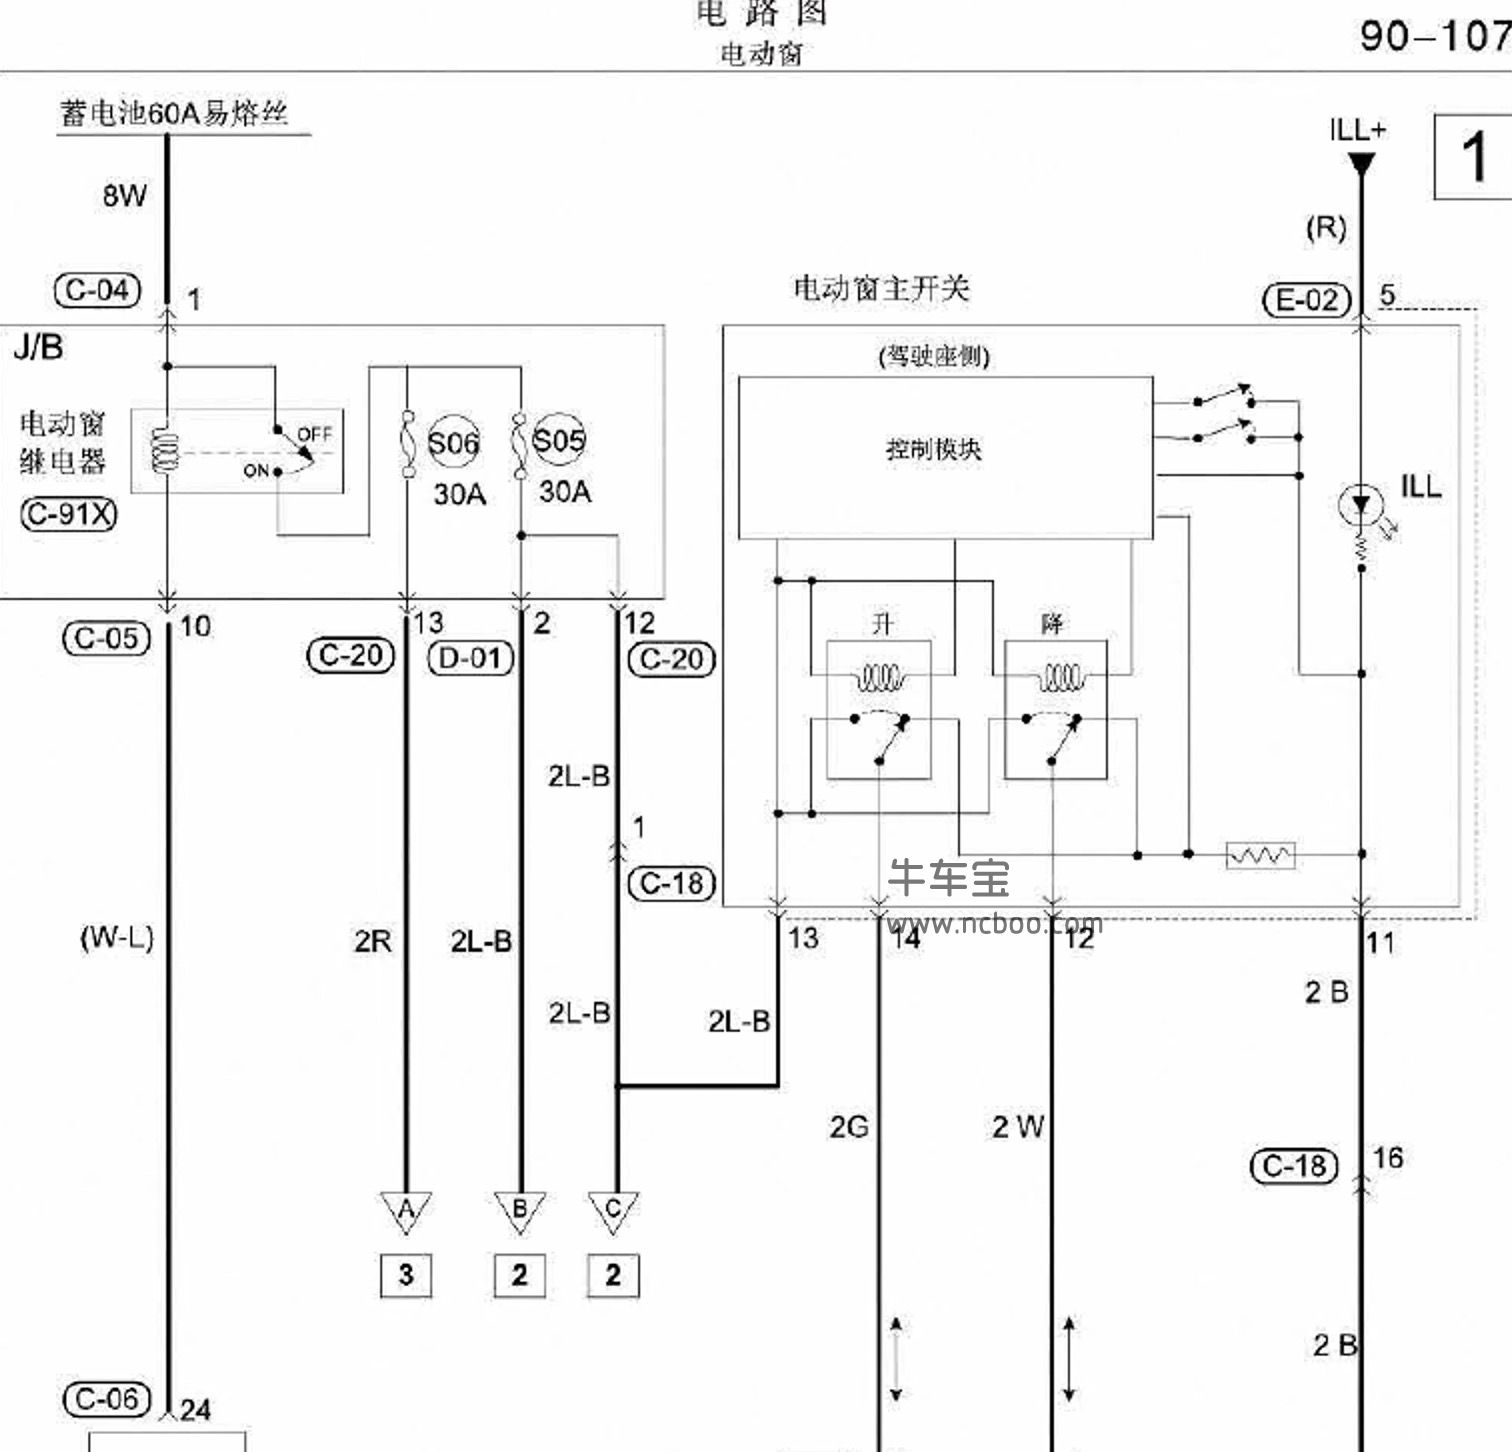 2017-2018款东南DX-3原厂电路图资料下载